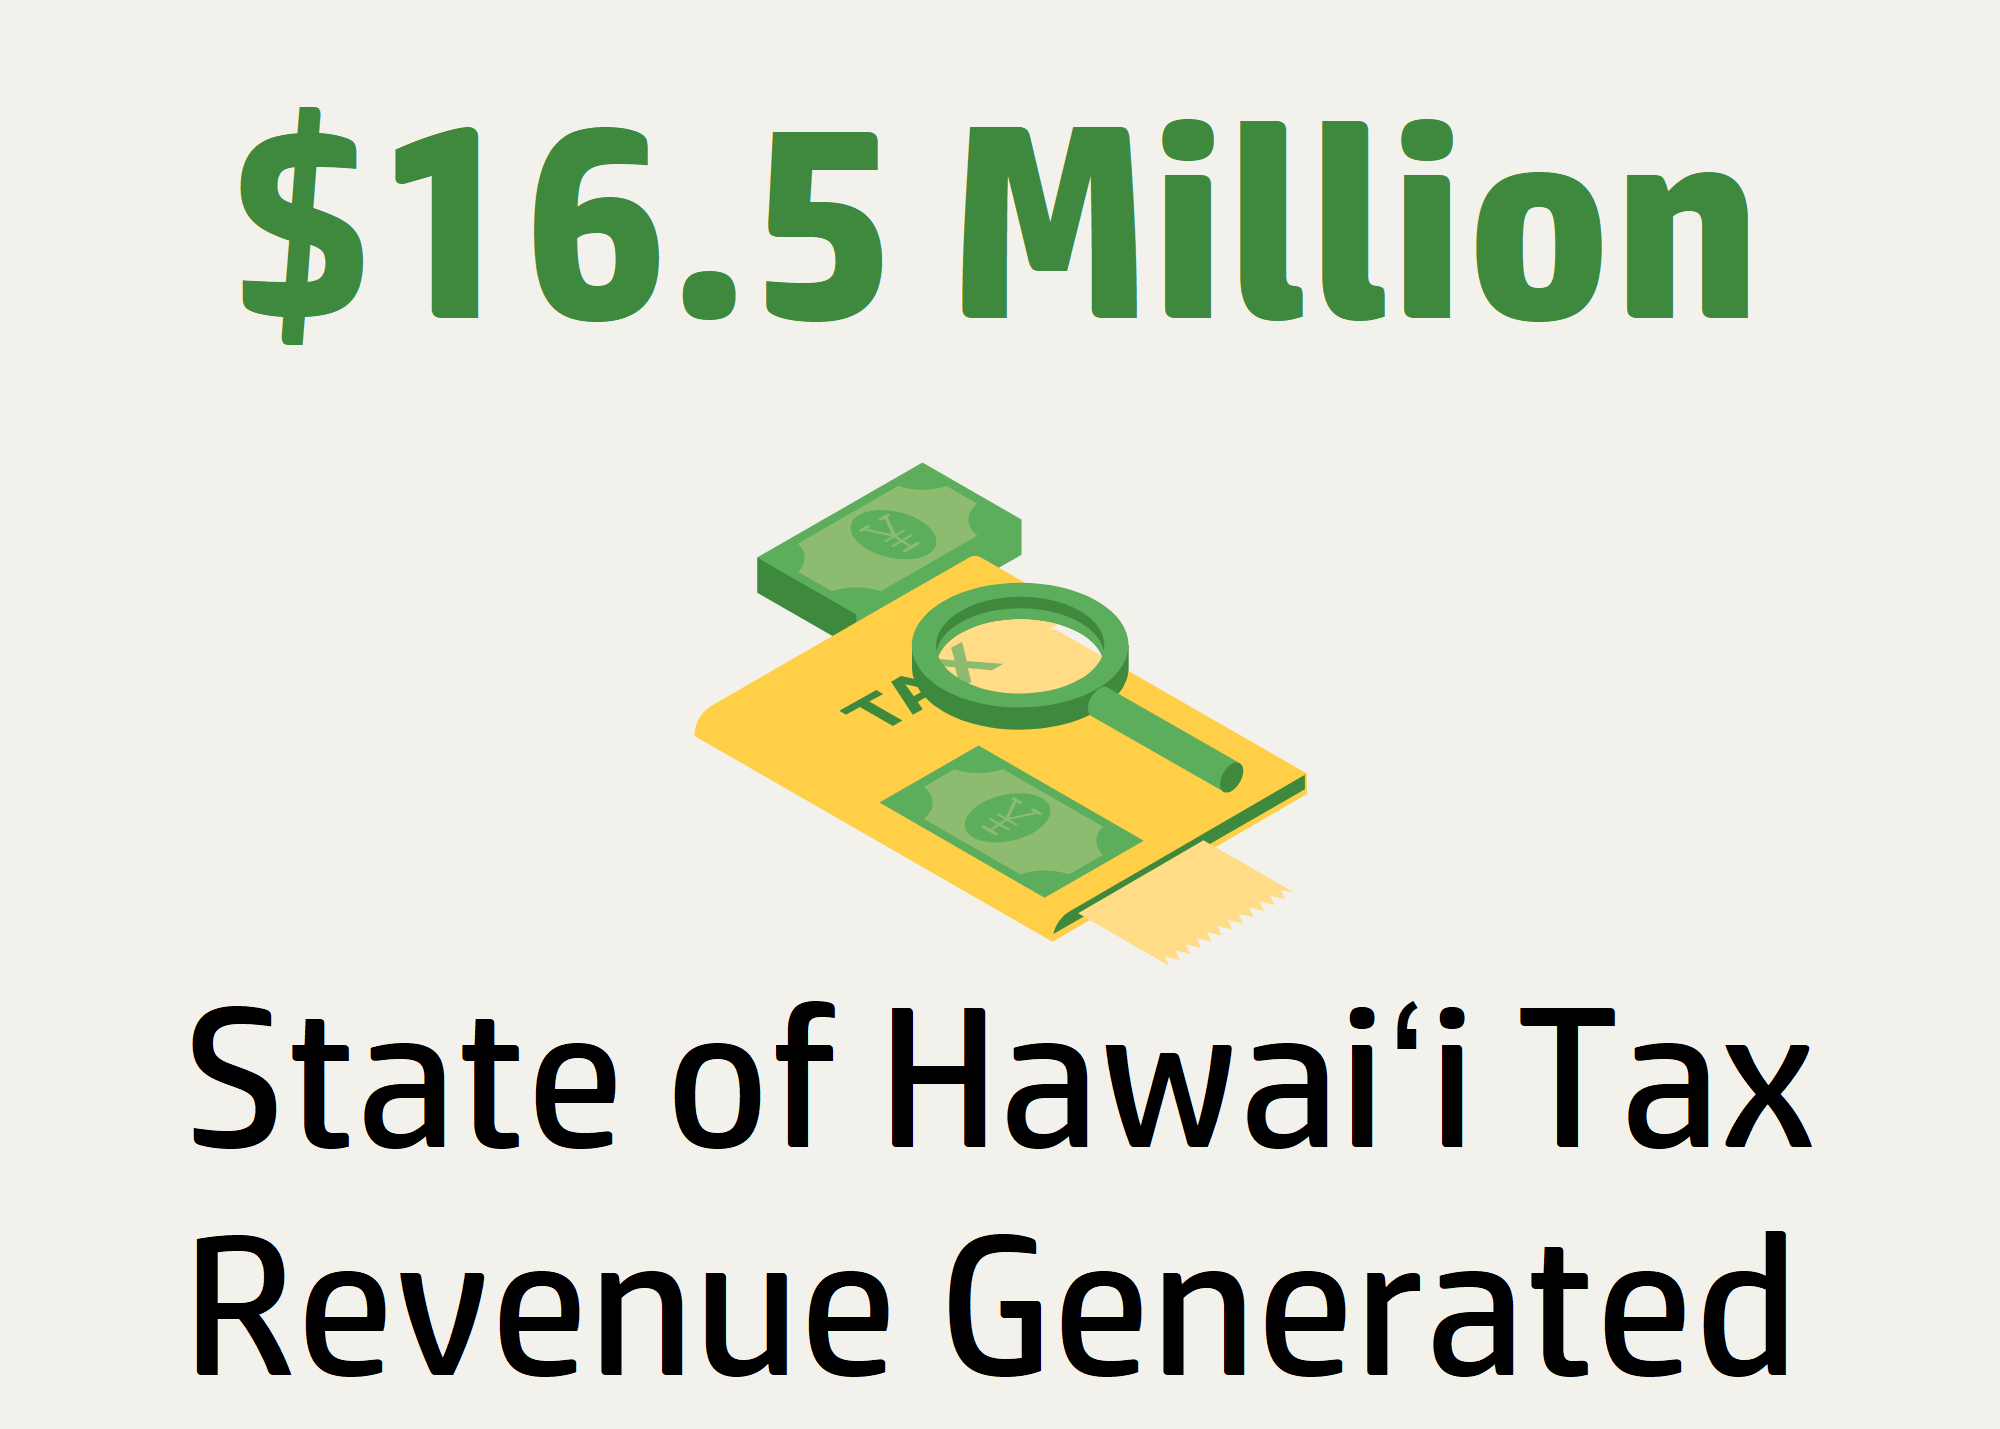 State of Hawaiʻi tax revenue generated; $16.5 million